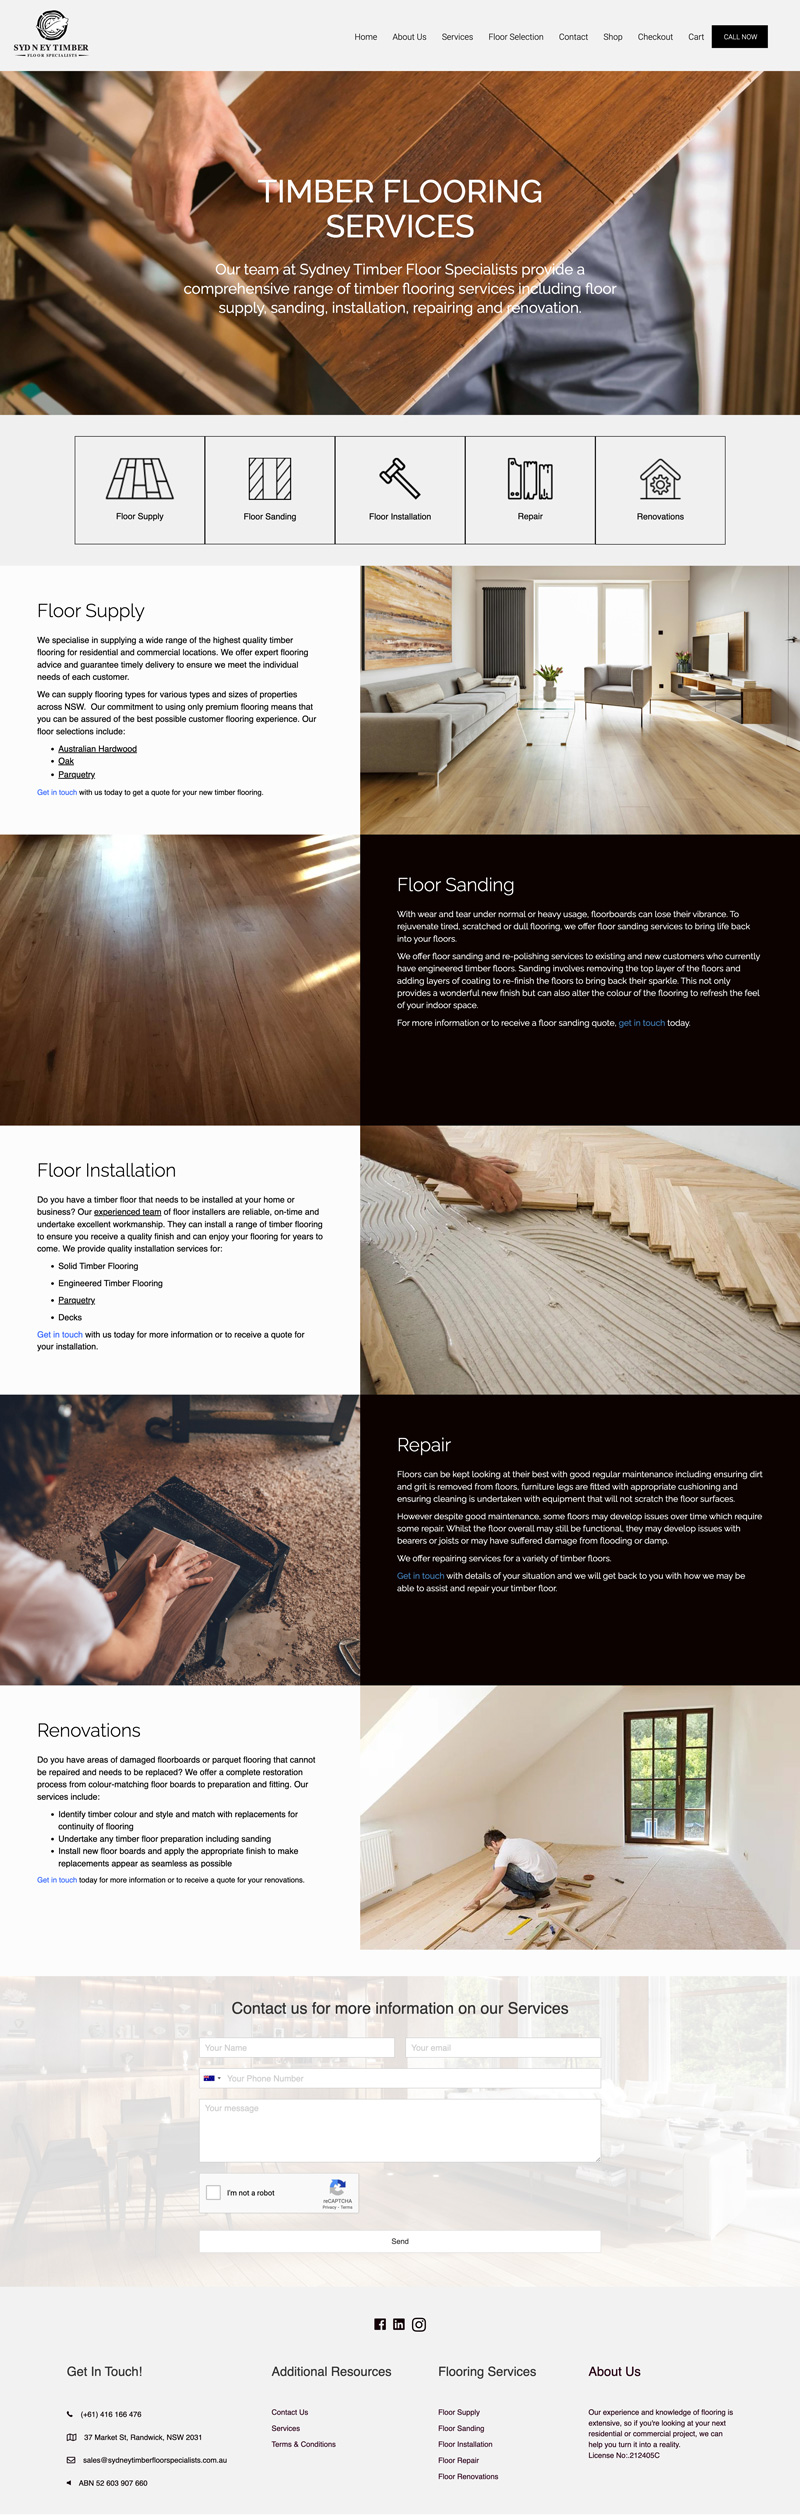 Sydney Timber Floor Specialists website design